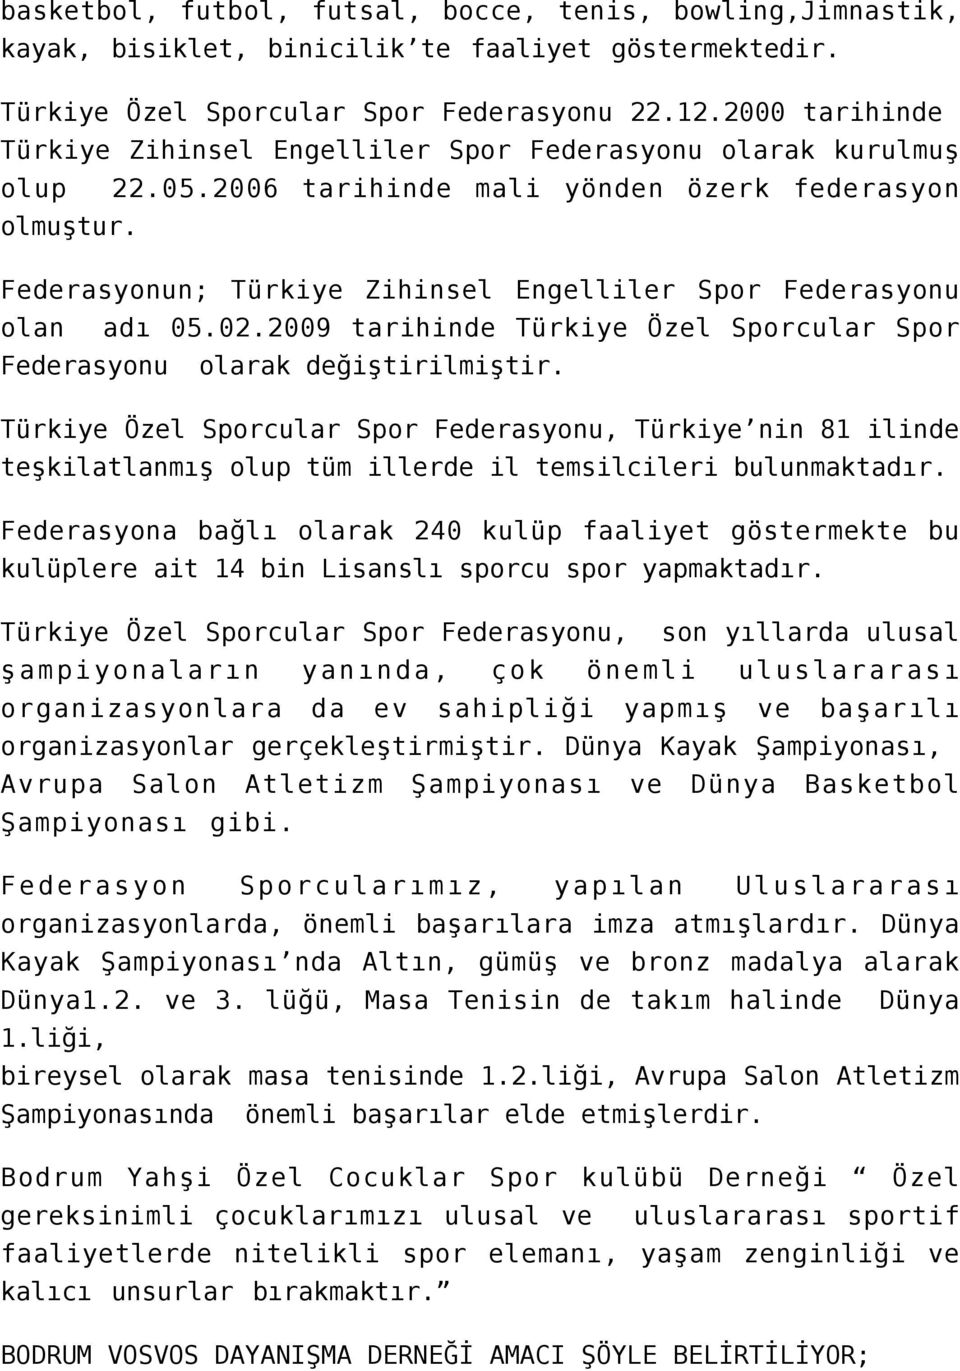 Federasyonun; Türkiye Zihinsel Engelliler Spor Federasyonu olan adı 05.02.2009 tarihinde Türkiye Özel Sporcular Spor Federasyonu olarak değiştirilmiştir.